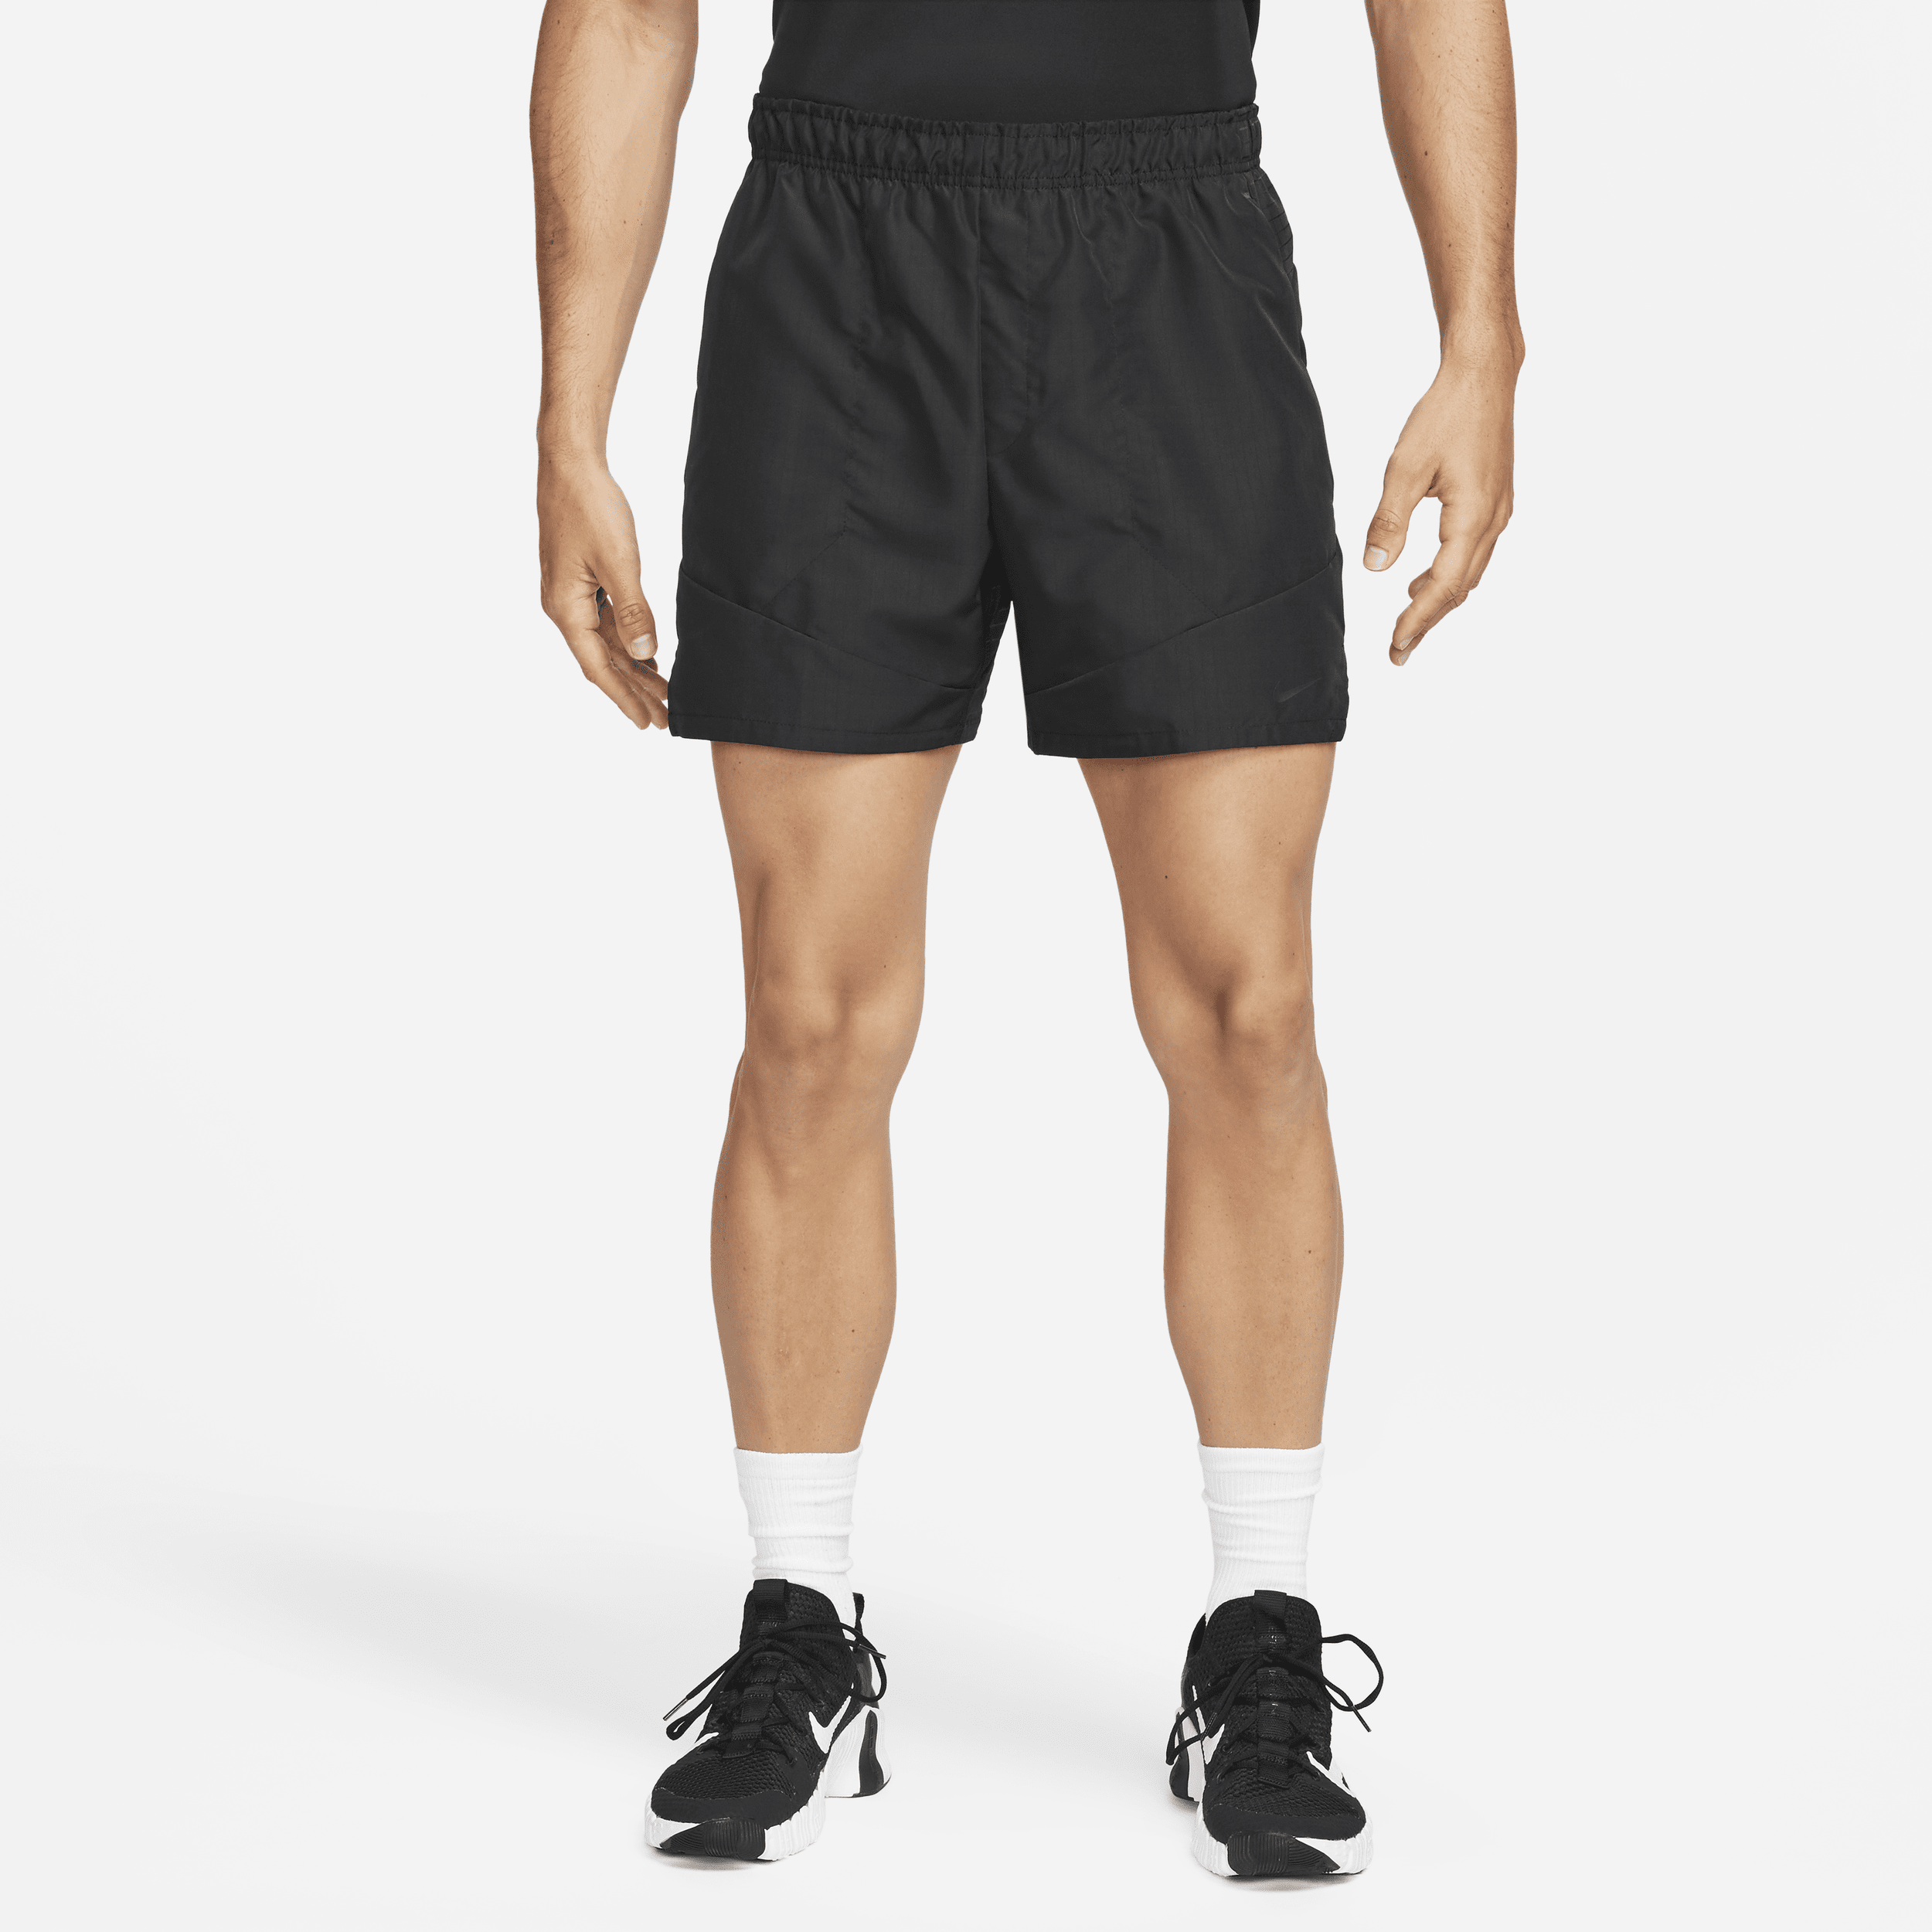 Nike Dri-FIT ADV A.P.S. Shorts versatili non foderati 15 cm – Uomo - Nero